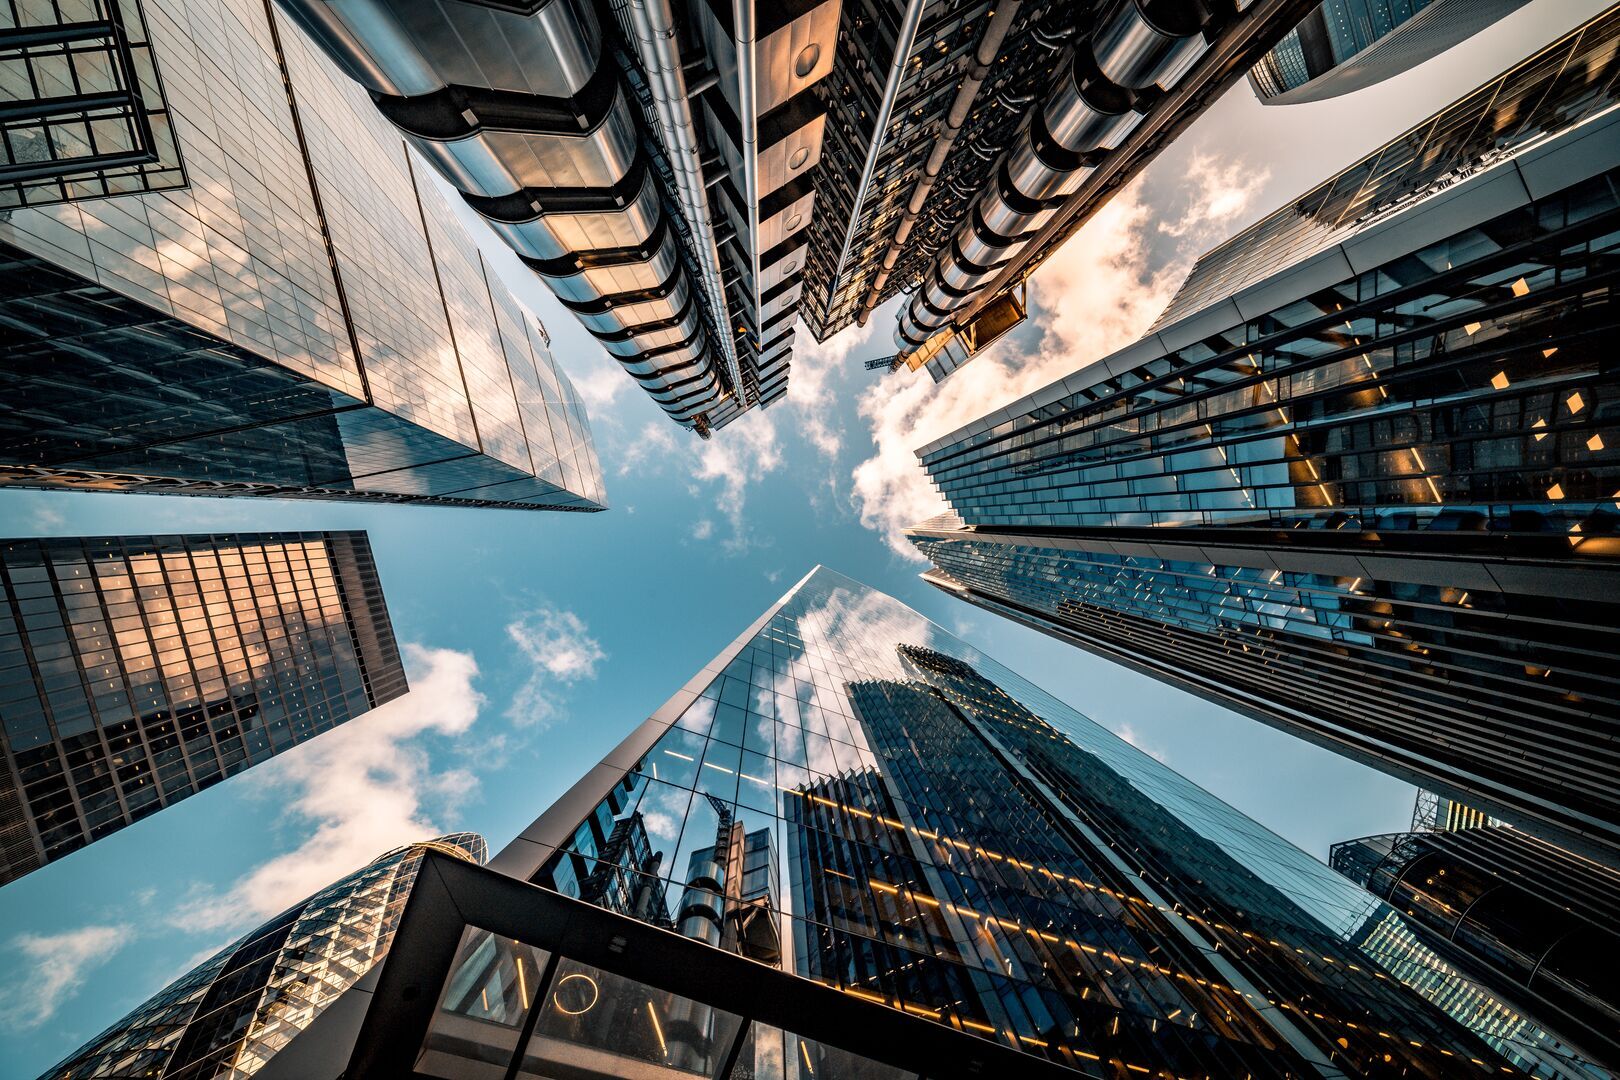 An upward-perspective from a street level between tall, modern buildings beneath a blue sky.